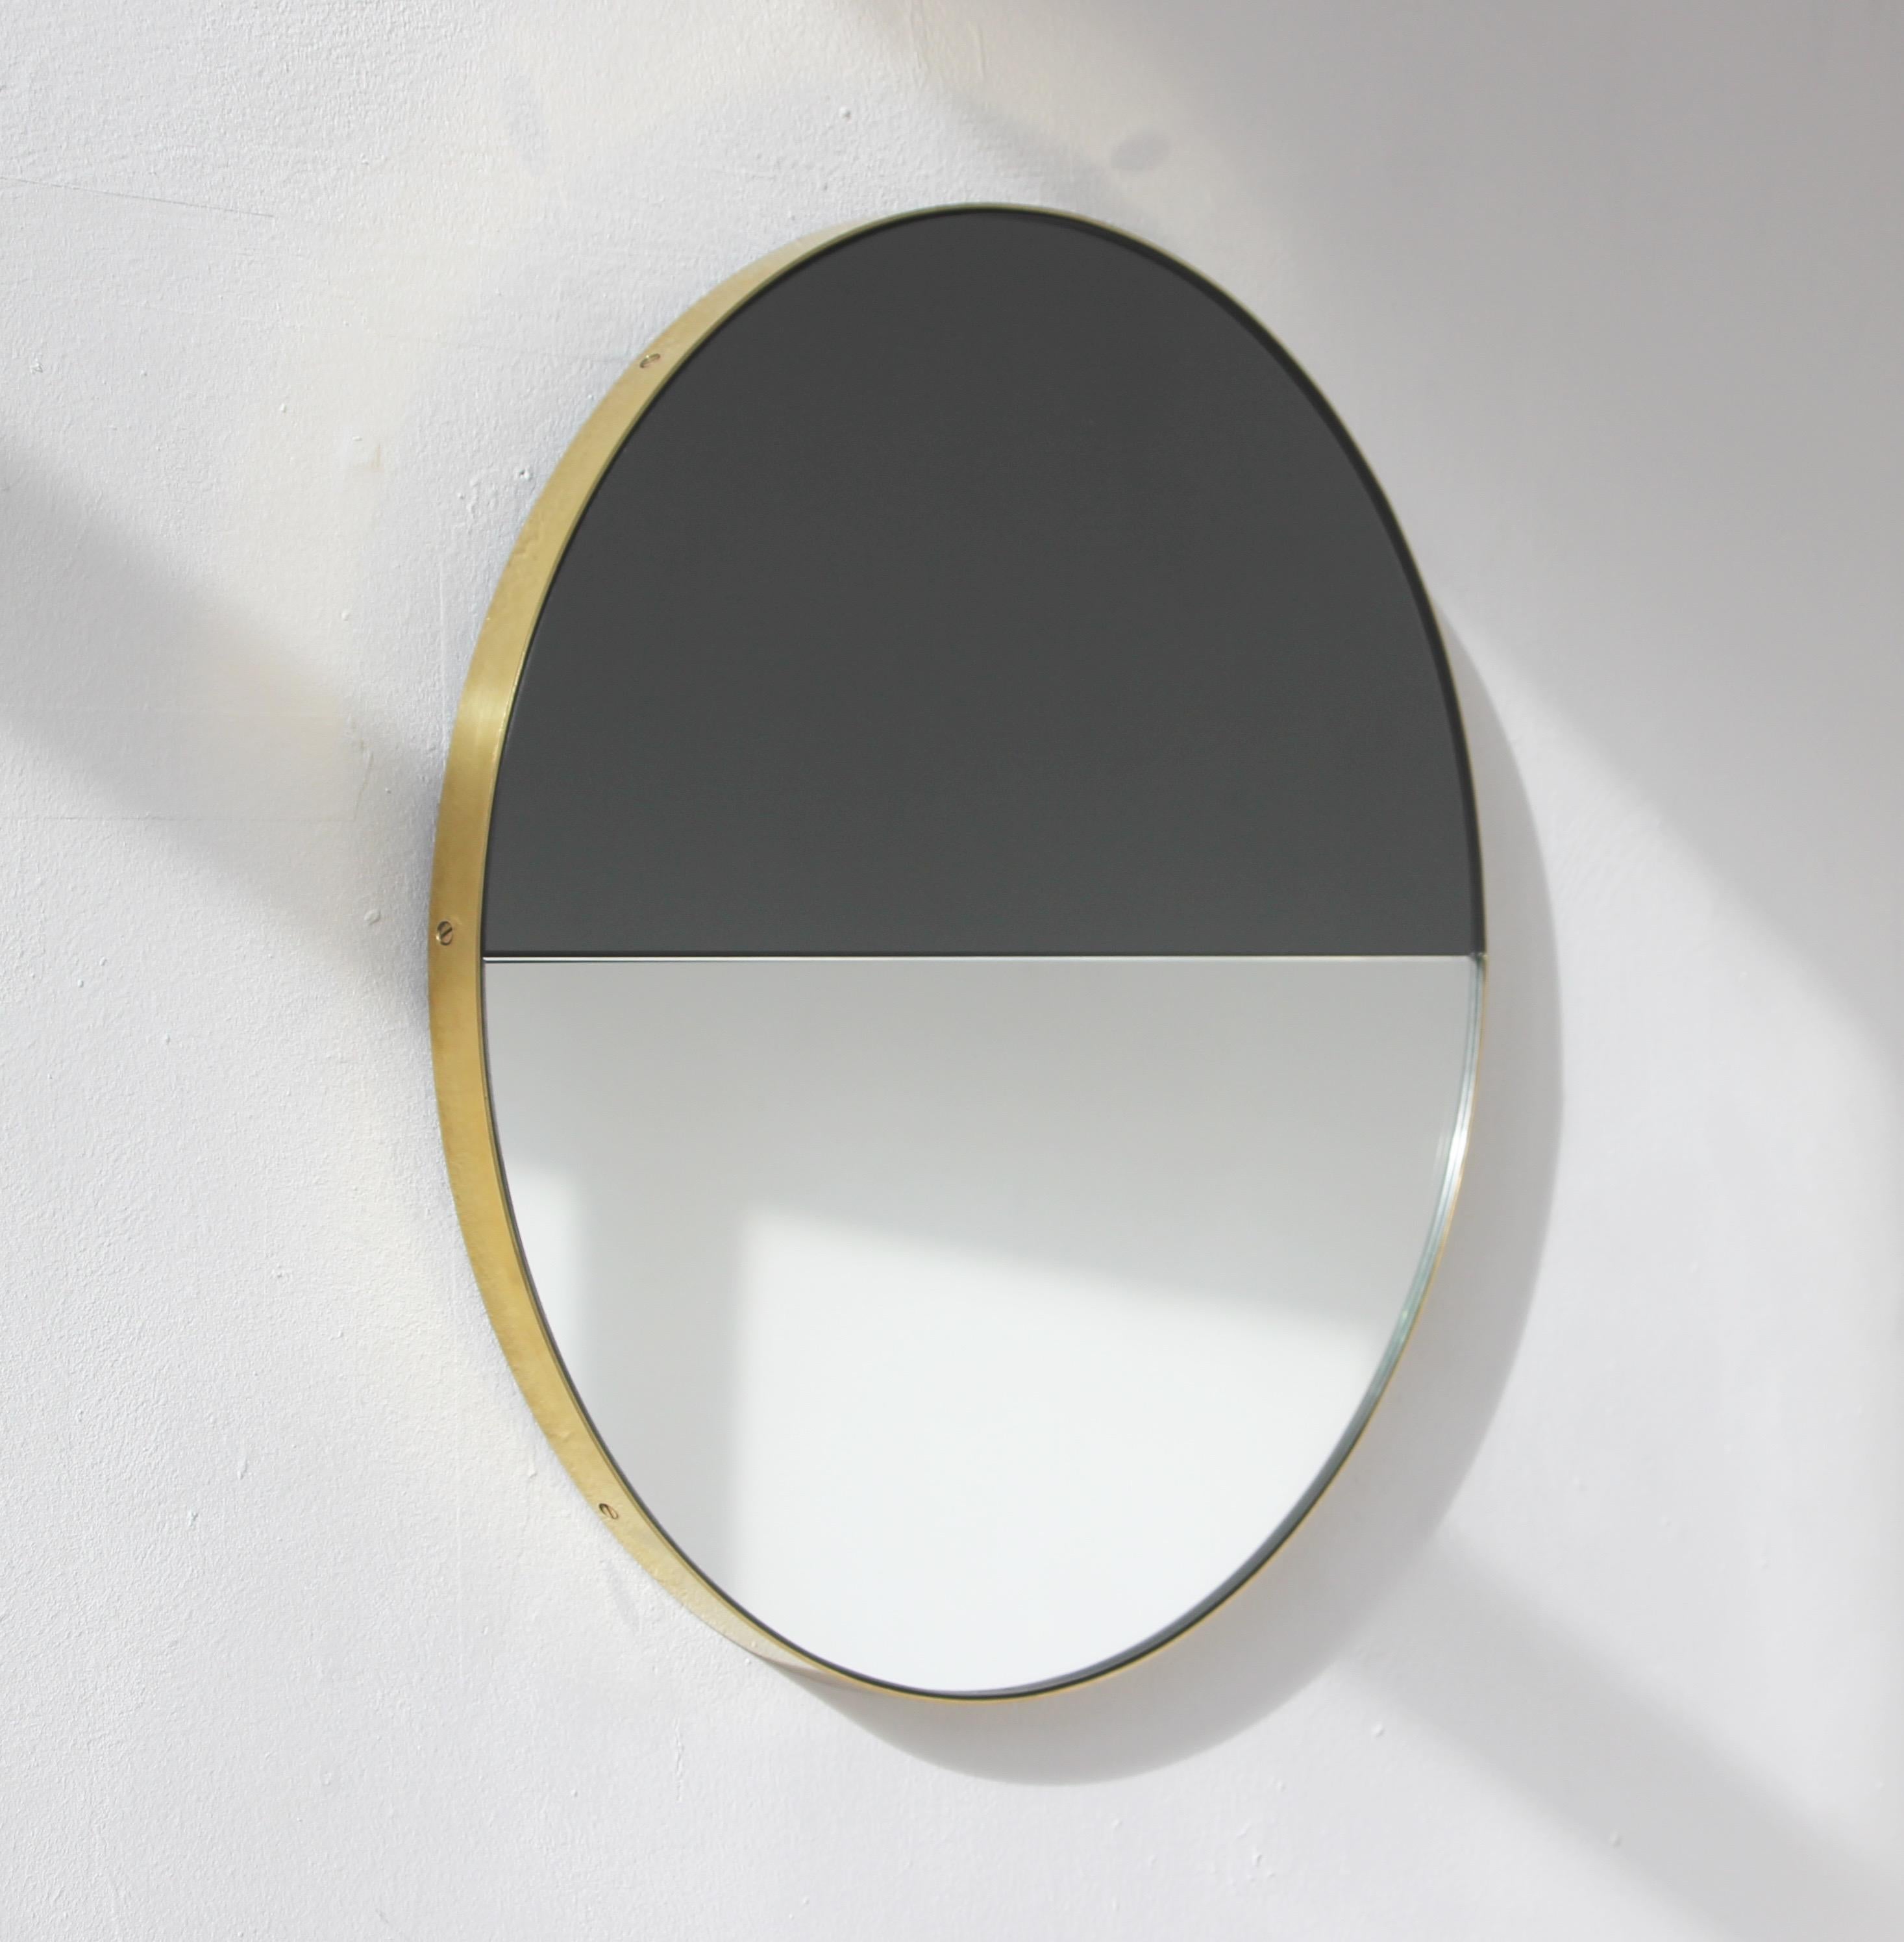 Dualis Orbis ist eine moderne Mischung aus schwarzem und silbernem Spiegel mit einem Rahmen aus gebürstetem Messing. Entworfen und handgefertigt in London, UK.

Ausgestattet mit einem speziellen Aufhängesystem, mit dem der Spiegel in vier